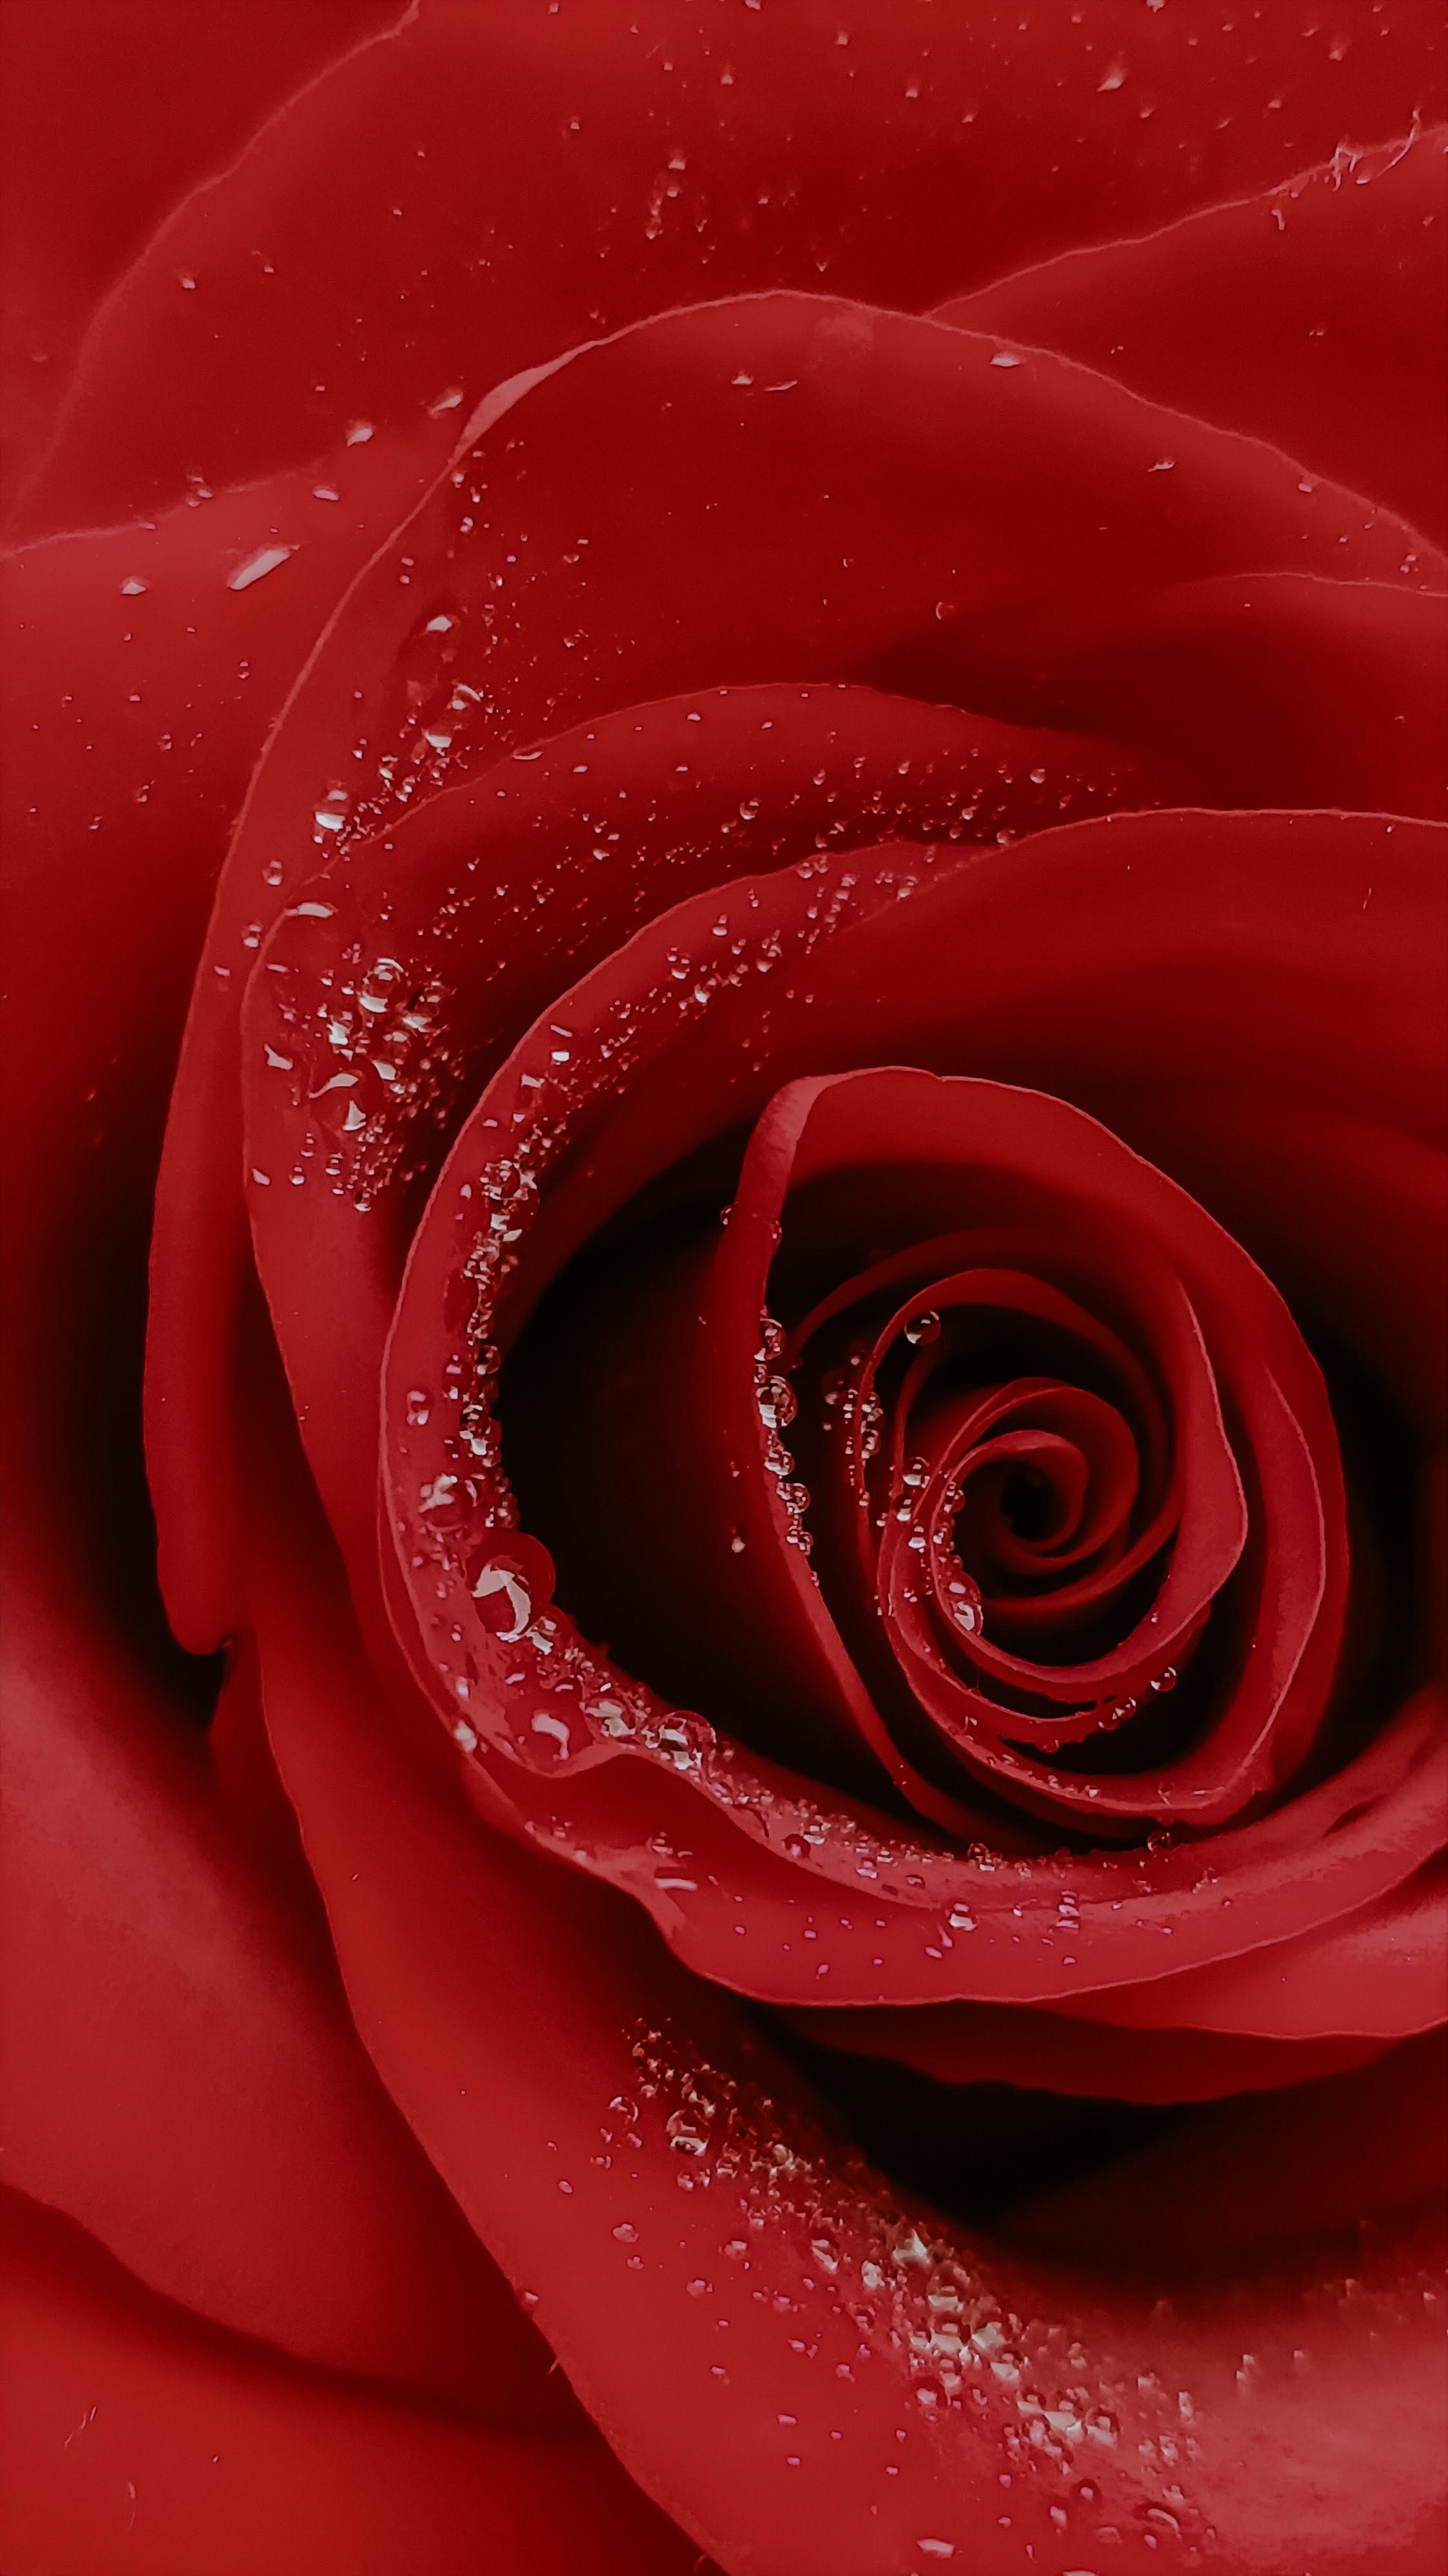 4K Phone Wallpaper rose, rose flower, drops, macro